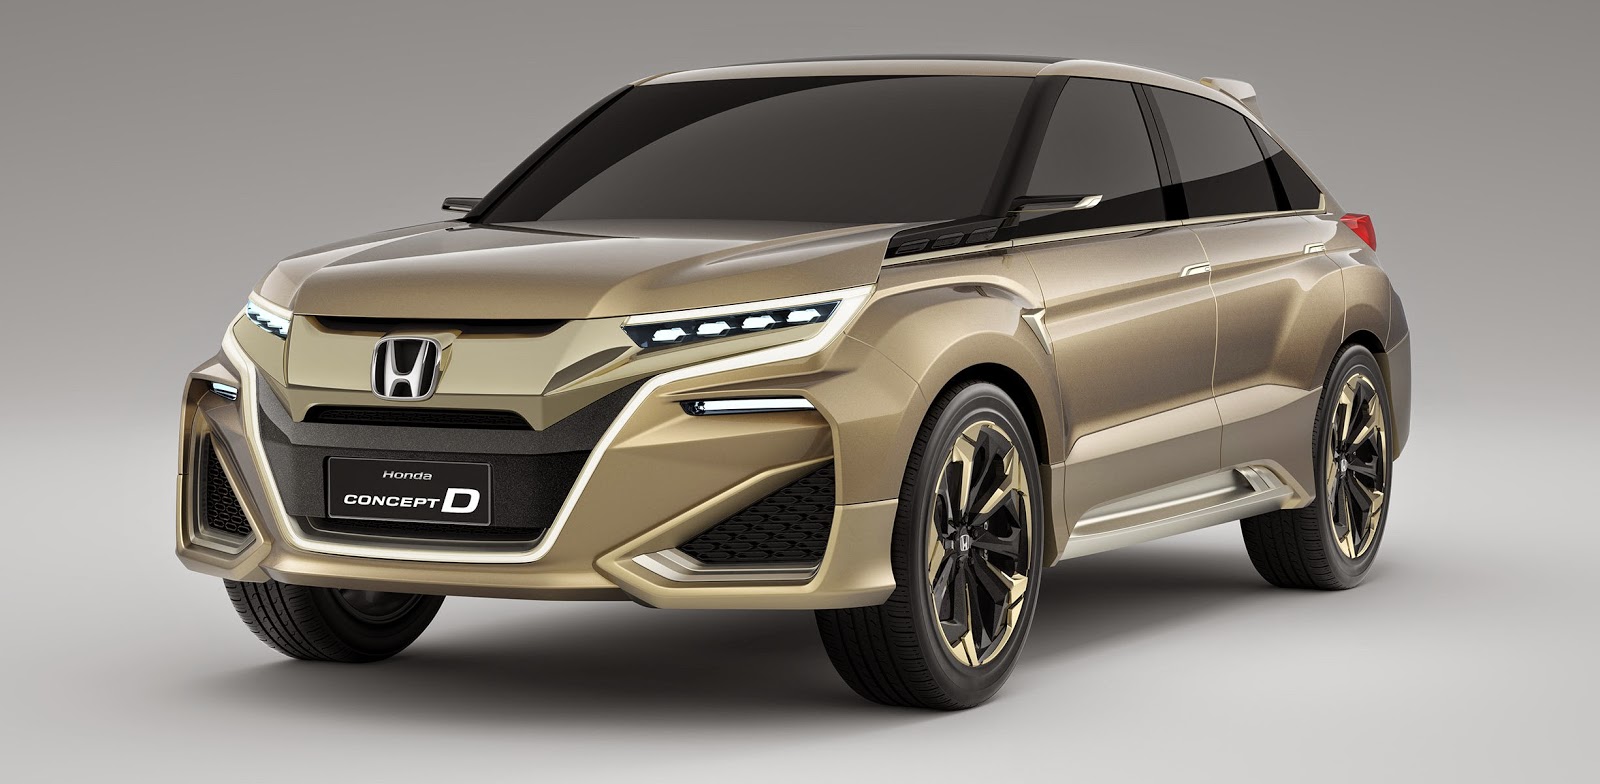  Mobil Honda  Terbaru Concept D Memulai Debutnya di China Spotase